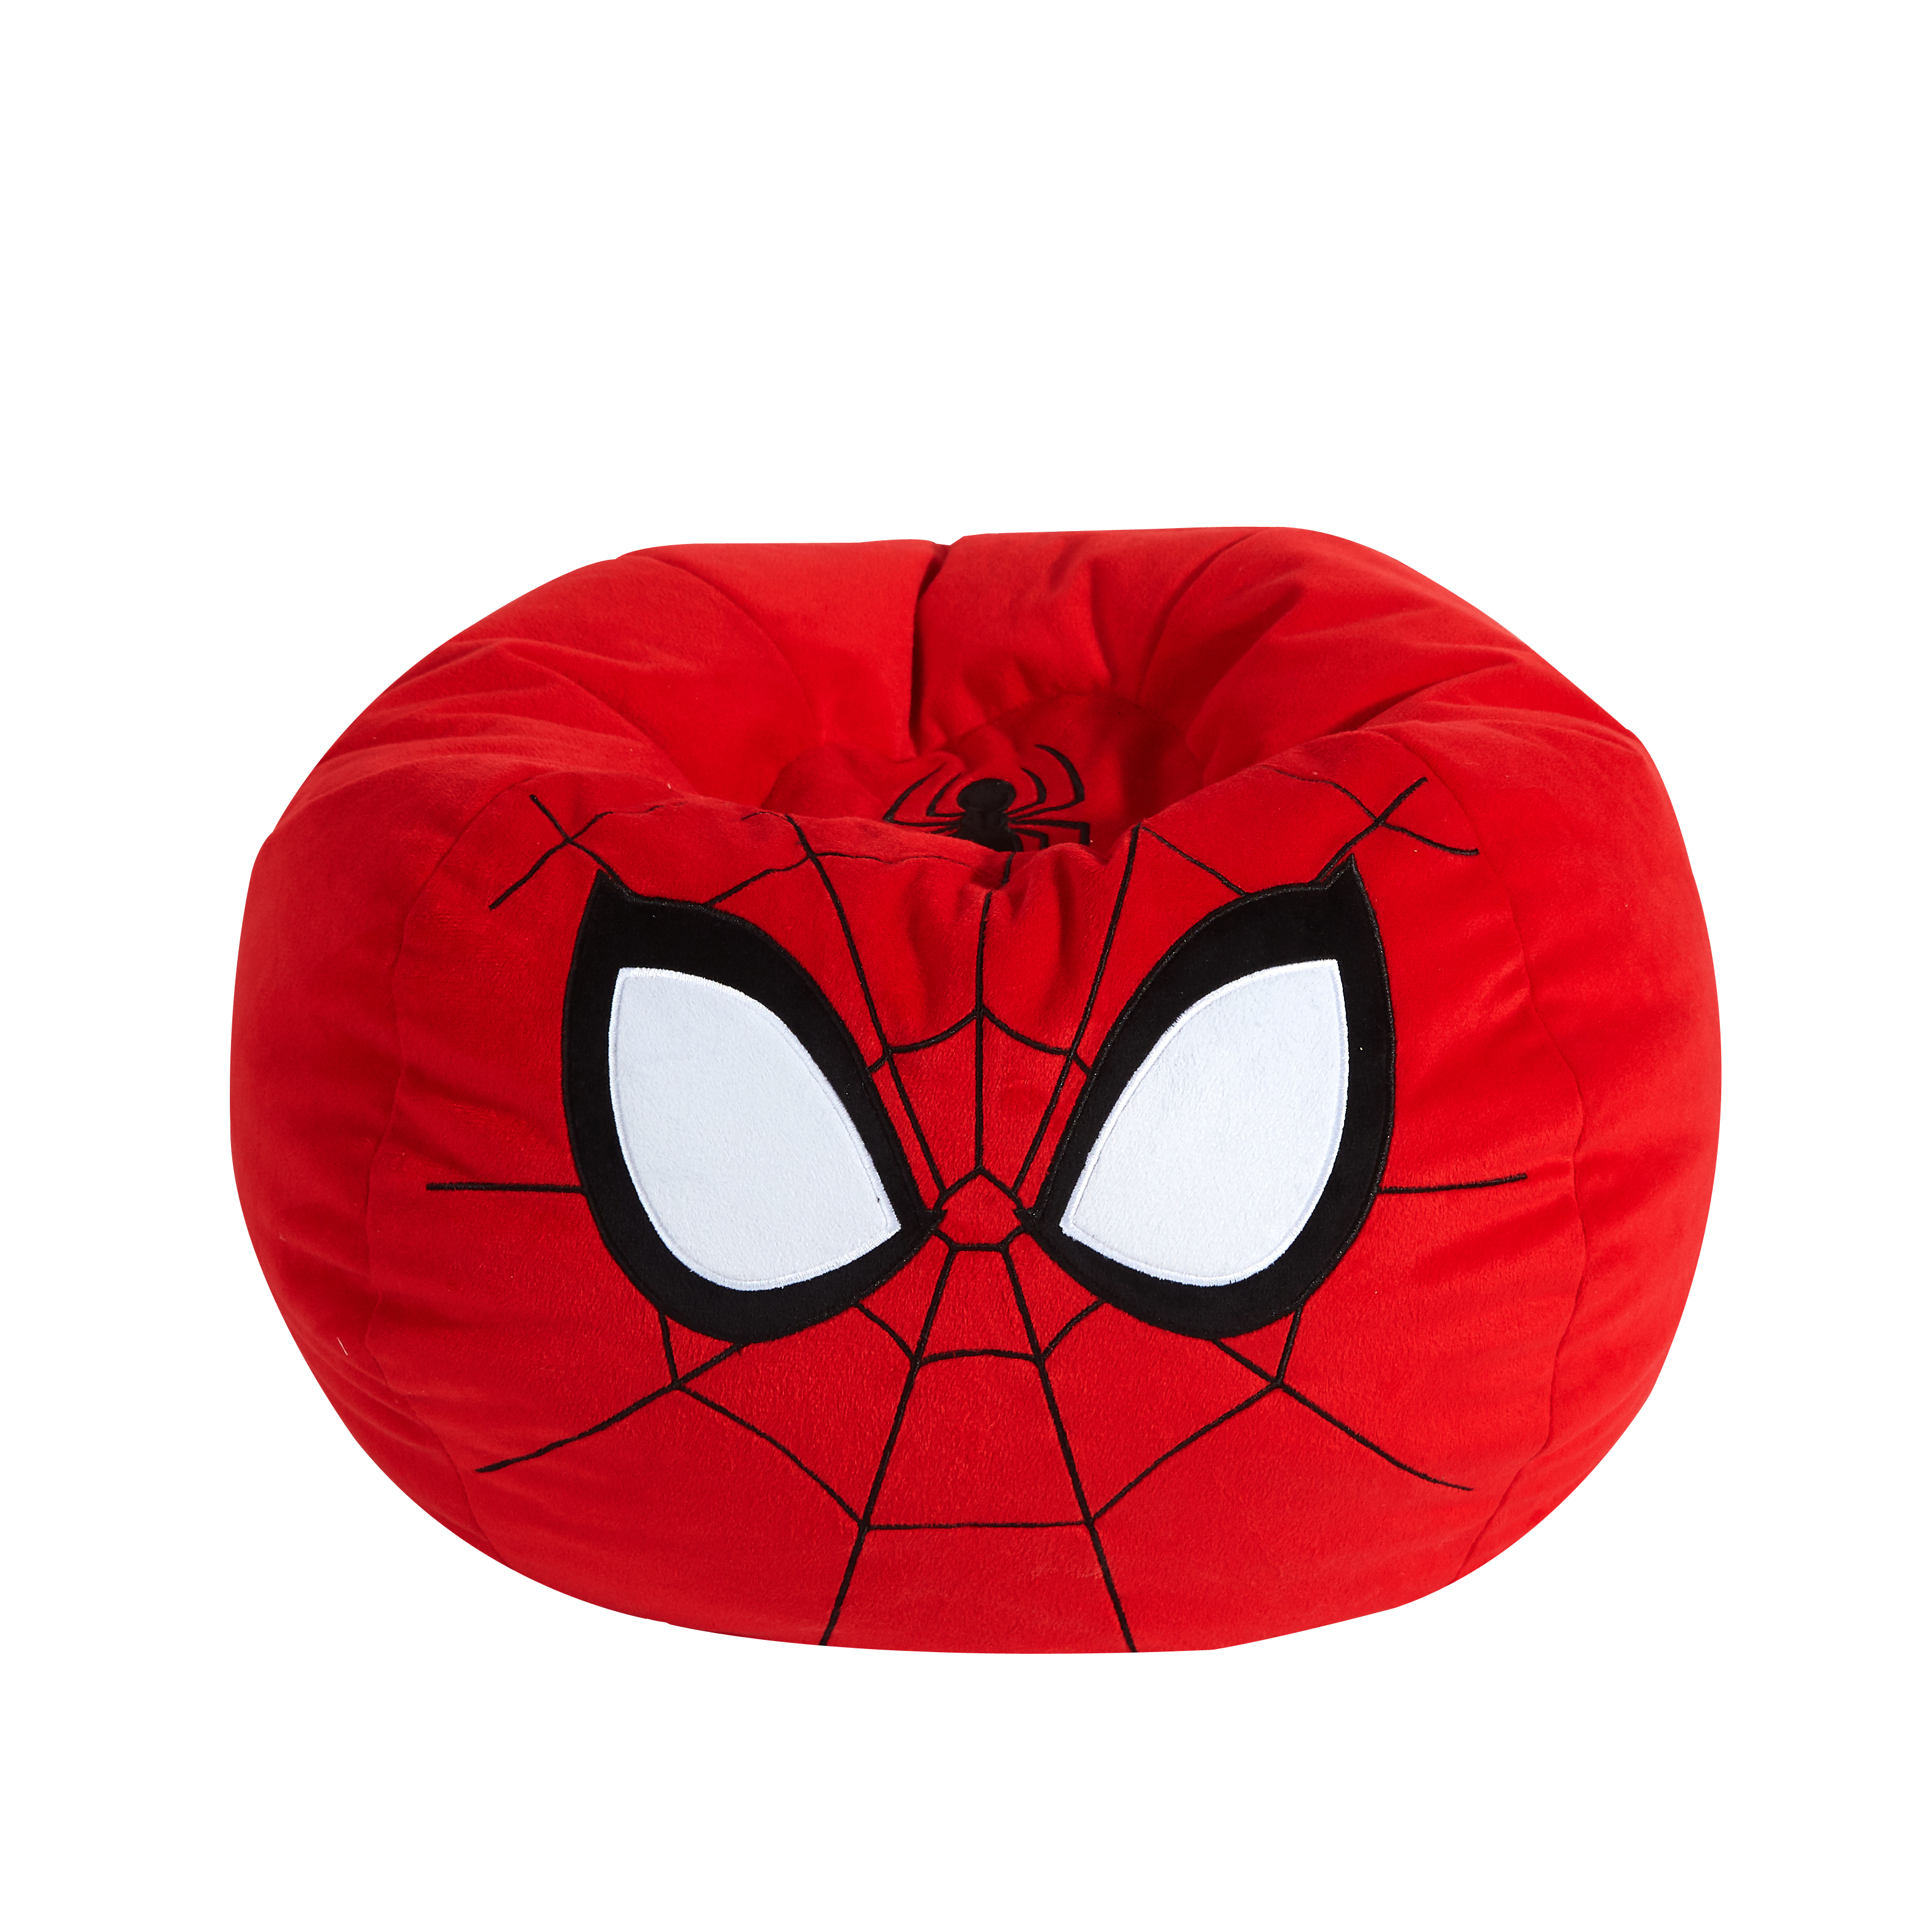 Buy Marvel Spiderman Kids Red Bean Bag Chair Online In Taiwan 363870699